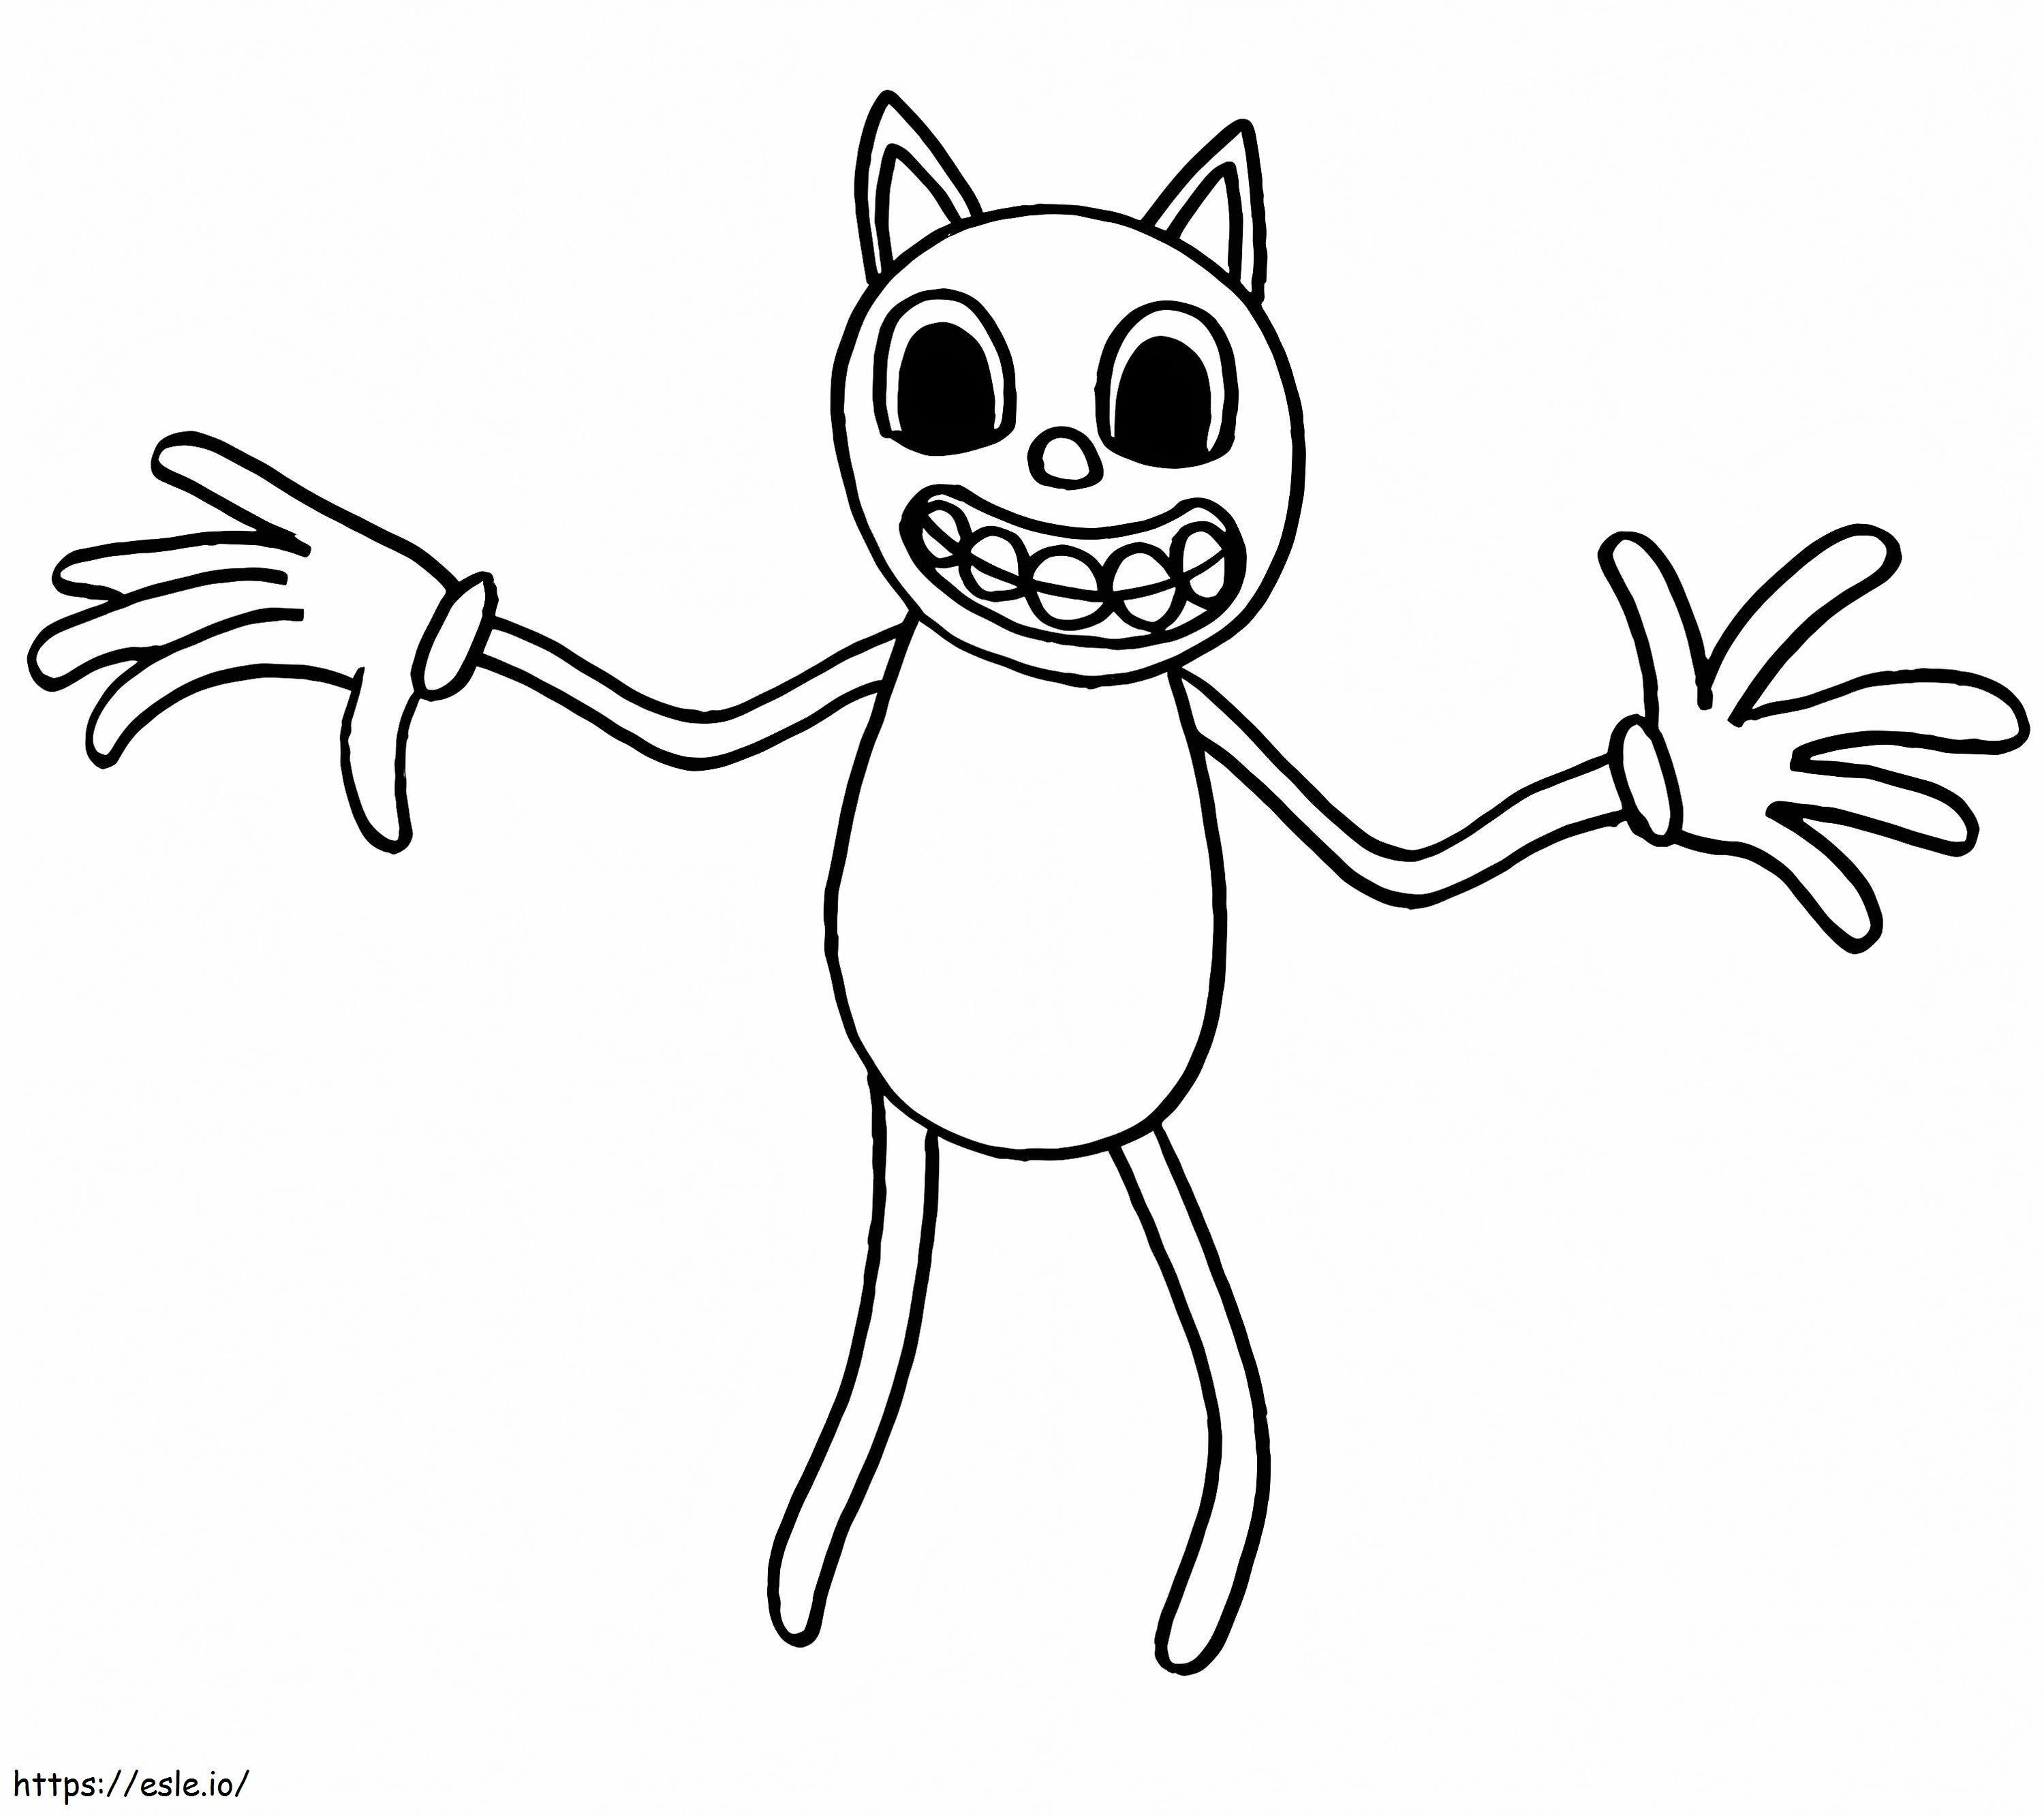 Scp de gato de dibujos animados para colorear